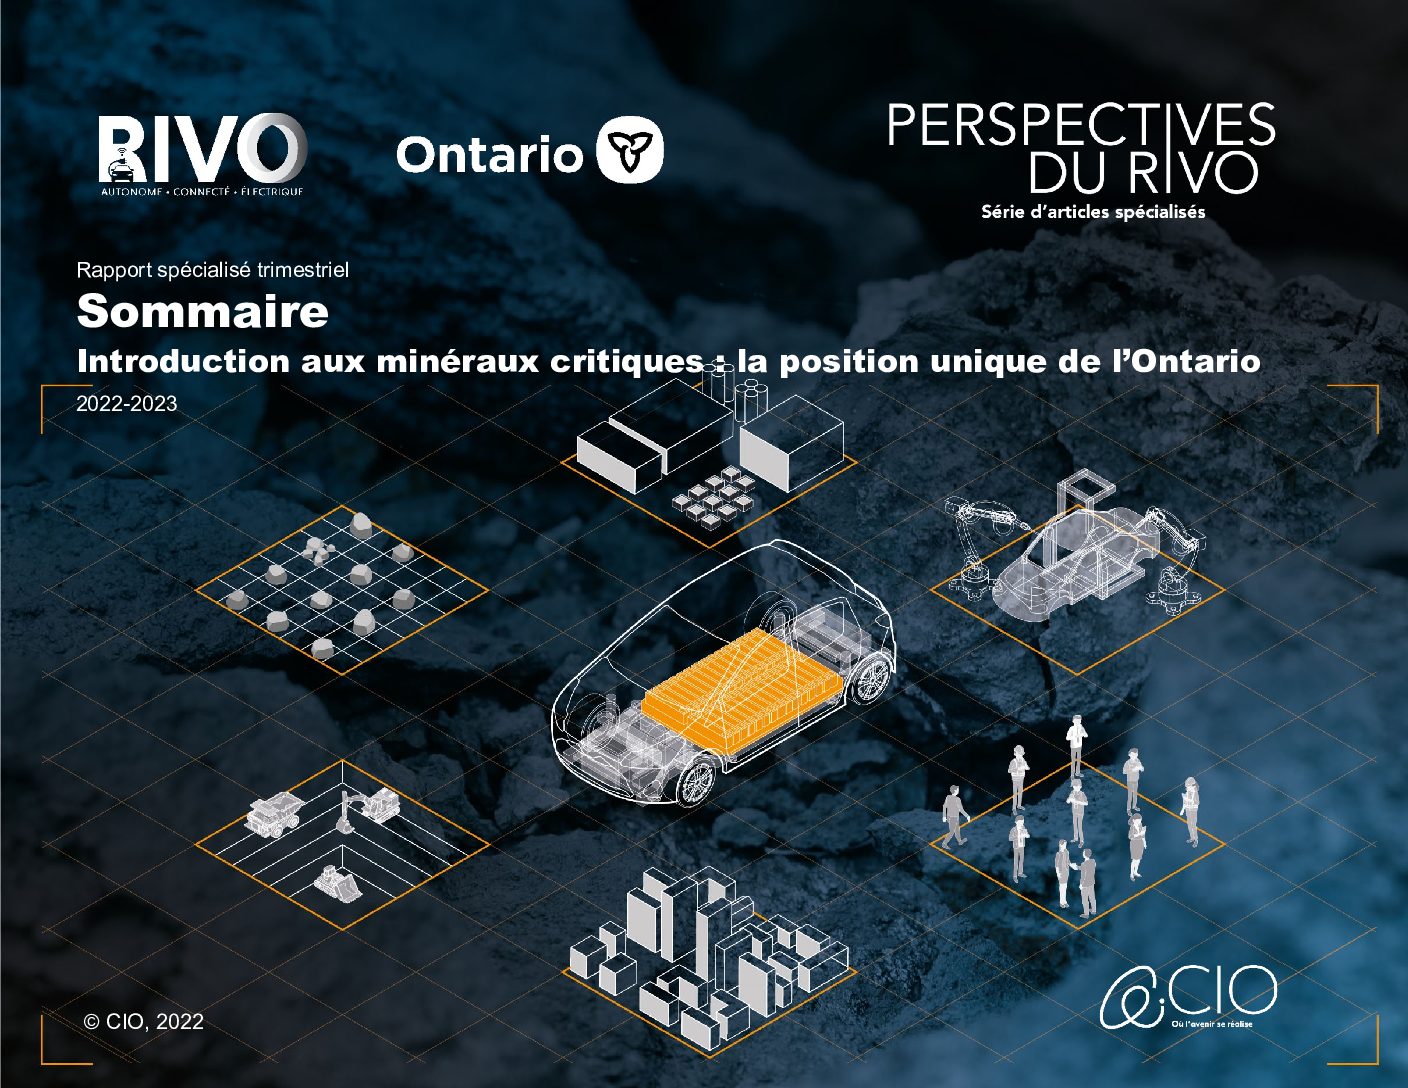 Introduction aux minéraux critiques: la position unique de l’Ontario